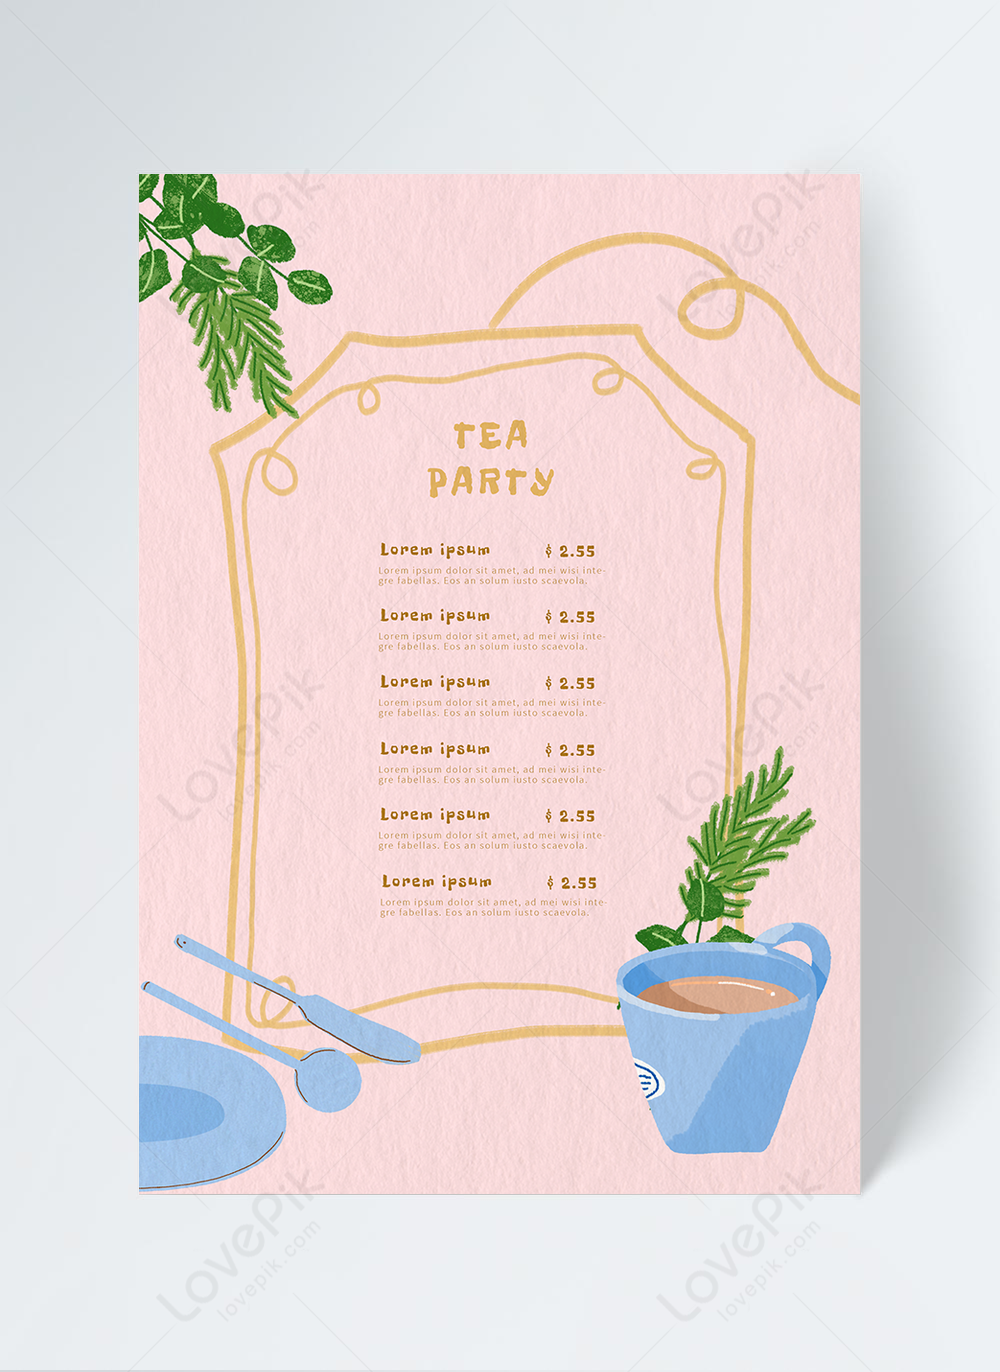 Simple afternoon tea tea illustration restaurant menu template With Editable Menu Templates Free